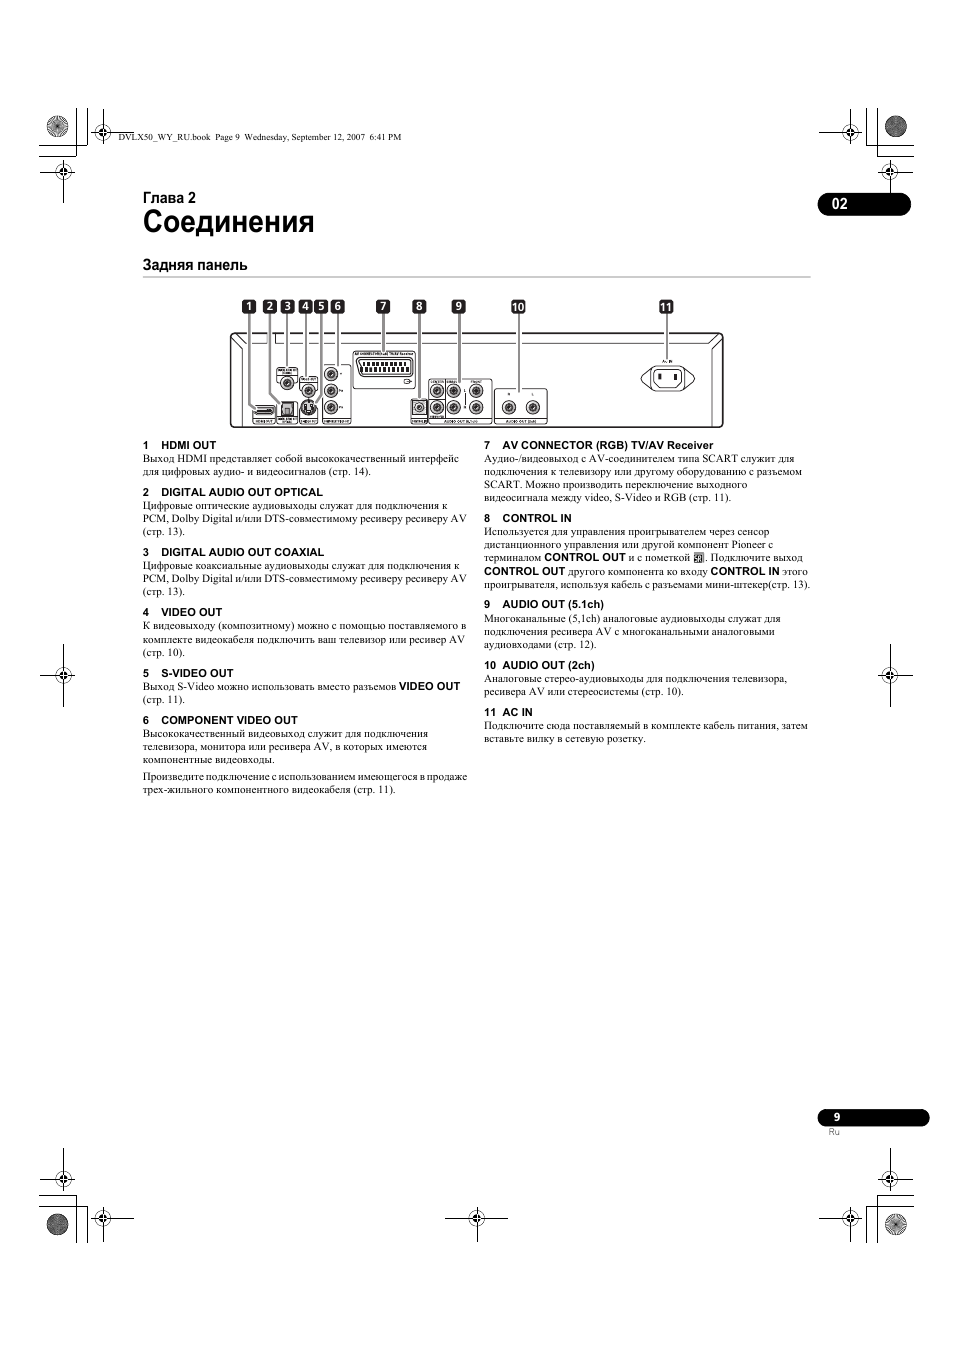 02 соединения, Задняя панель, Соединения | Инструкция по эксплуатации Pioneer DV-LX50 | Страница 9 / 48